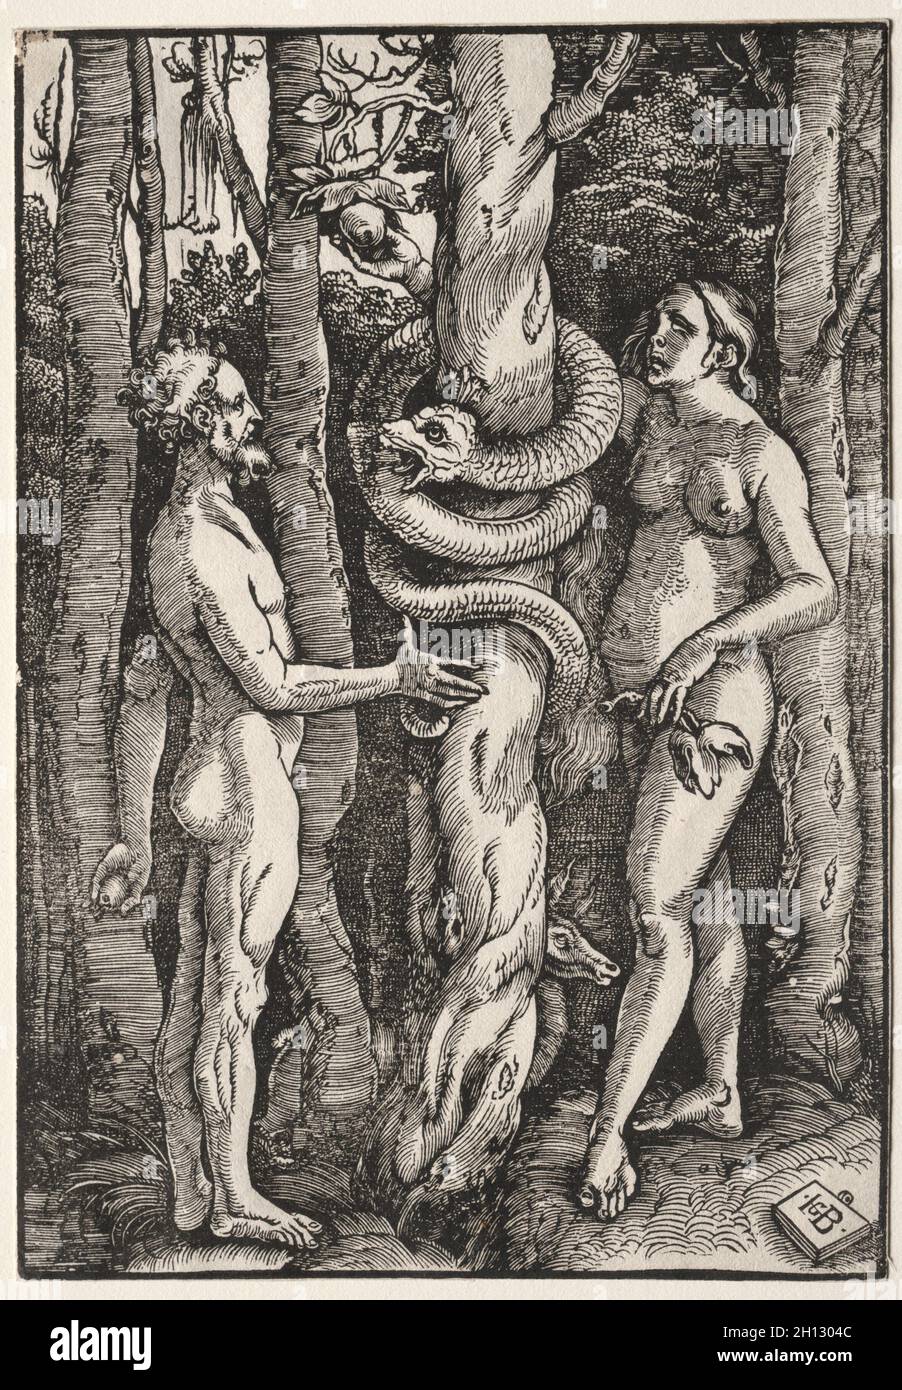 Adán y Eva, c. 1514. Hans Baldung (alemán, 1484/85-1545). Corte en madera; imagen: 22,2 x 15,3 cm (8 3/4 x 6 pulg.); hoja: 22,2 x 15,3 cm (8 3/4 x 6 pulg.). Foto de stock